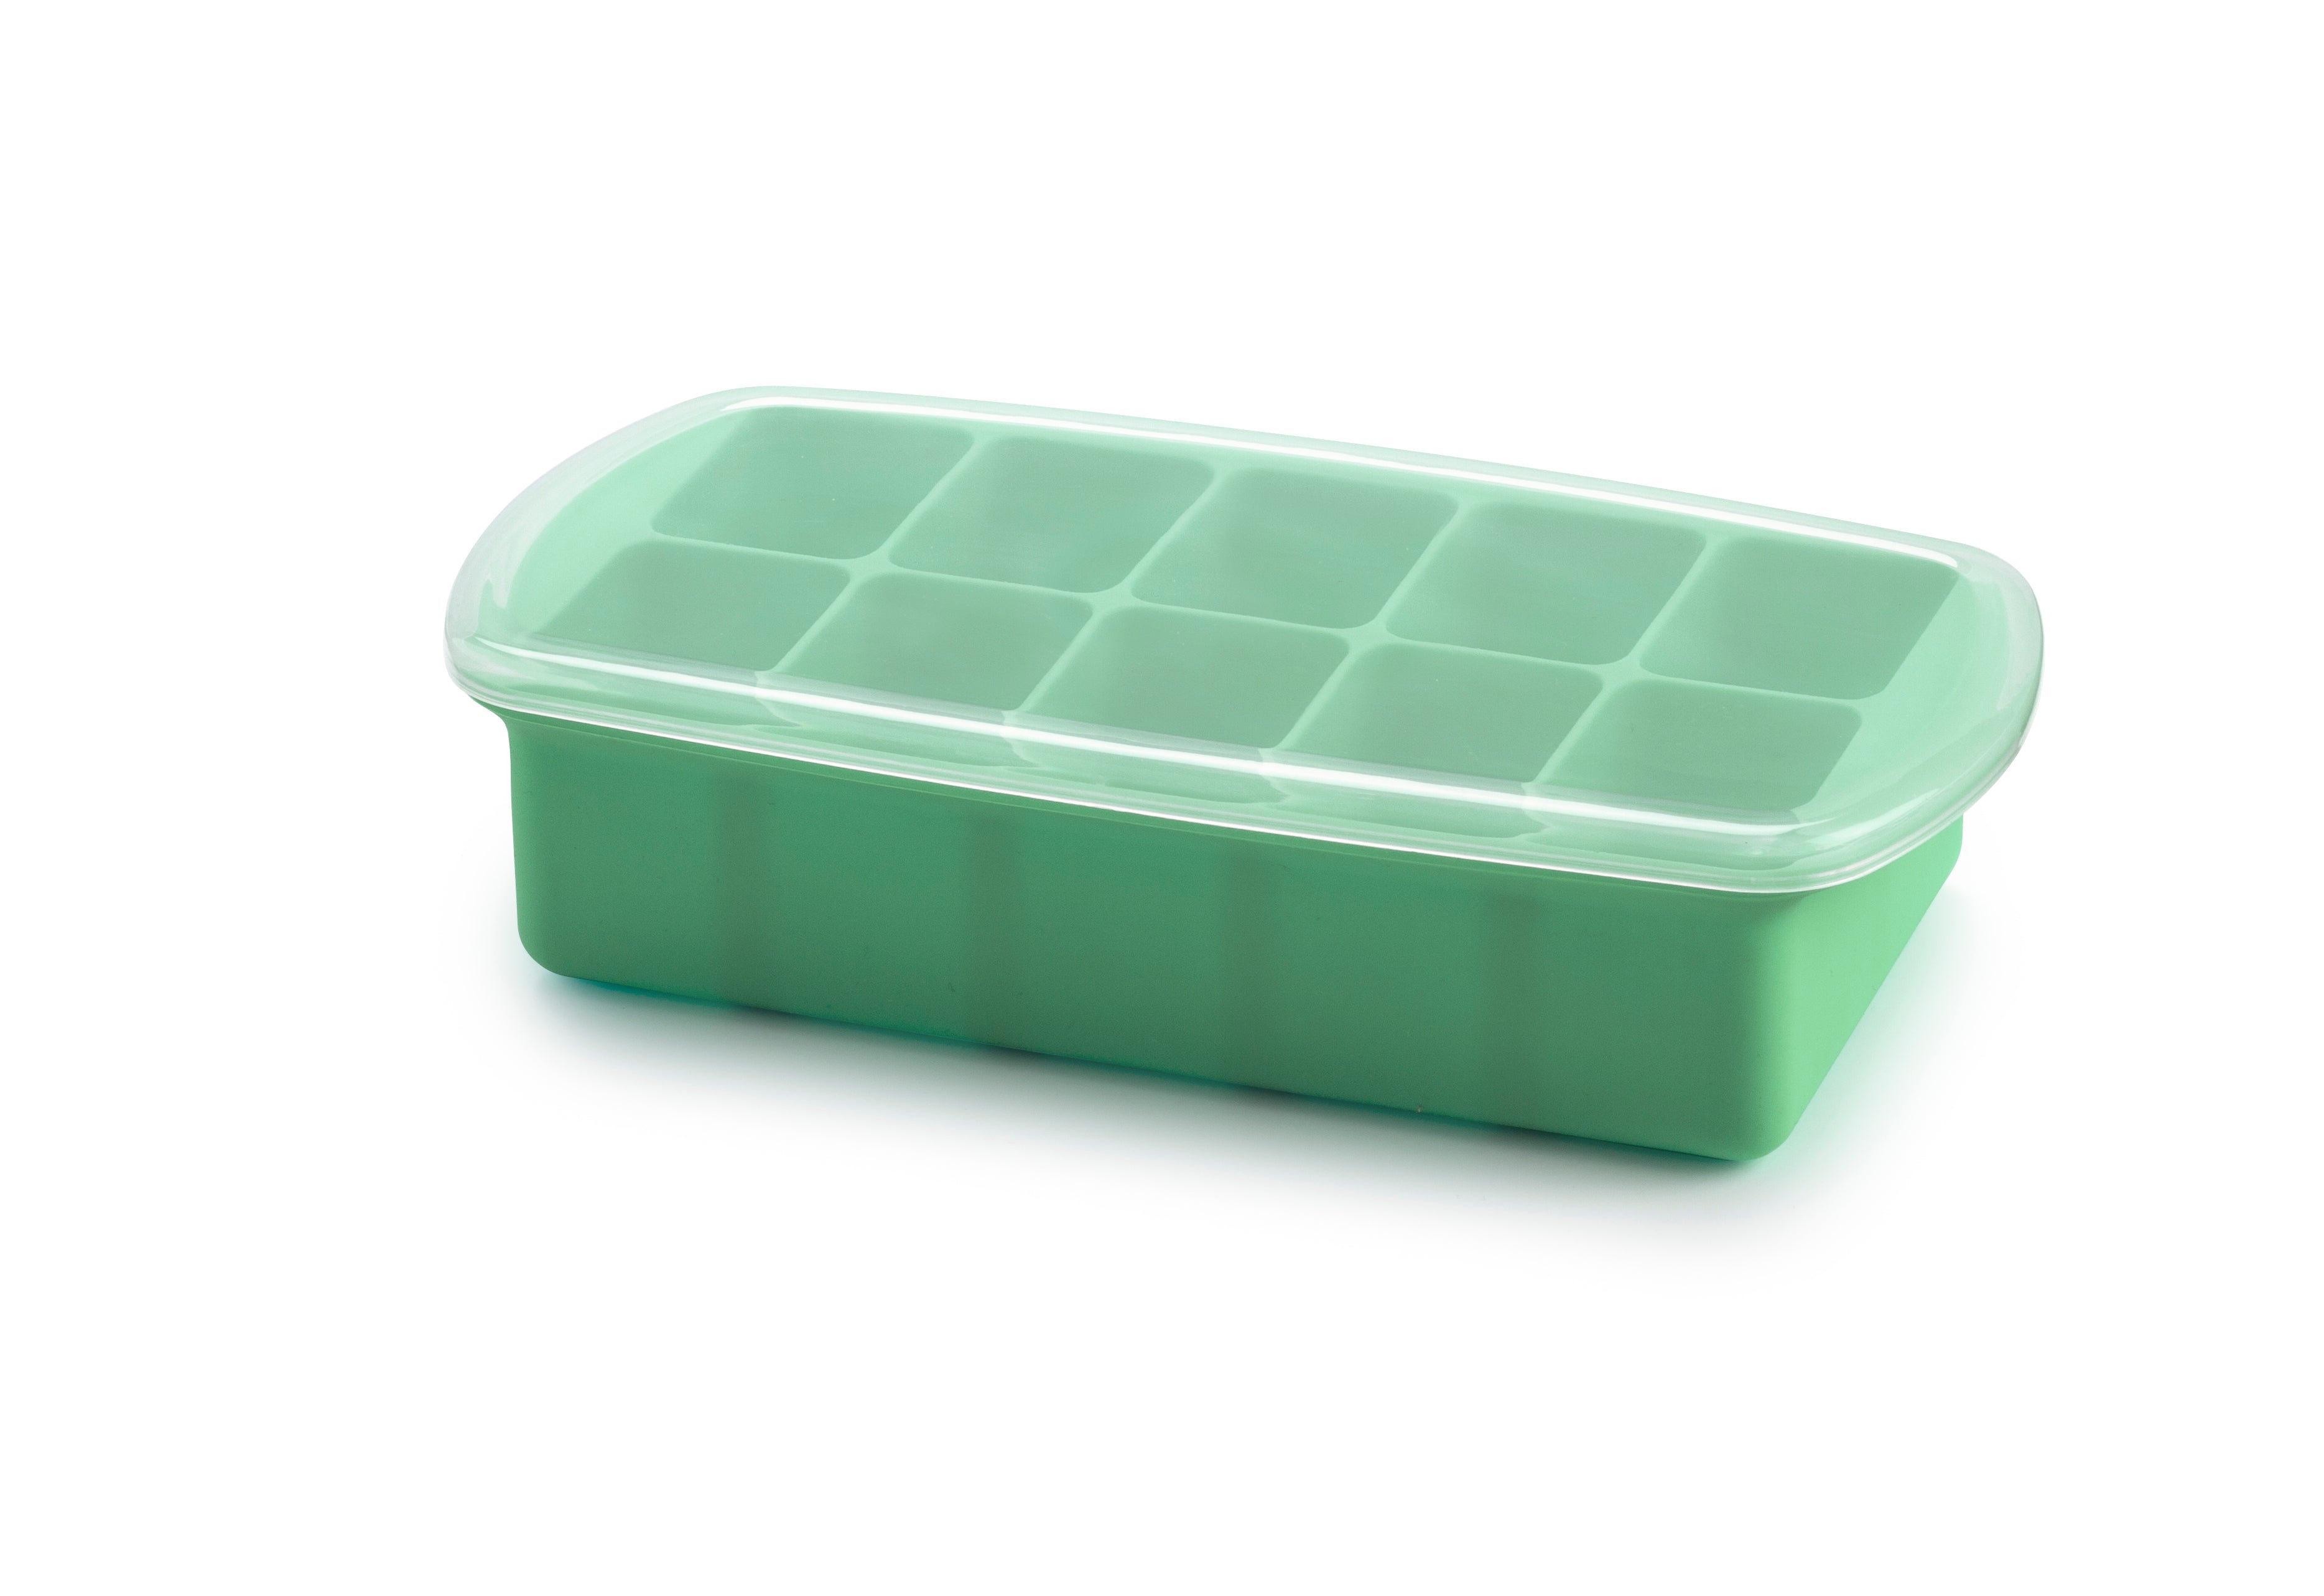 KidCo Baby Steps Freezer Trays - 2 freezer trays